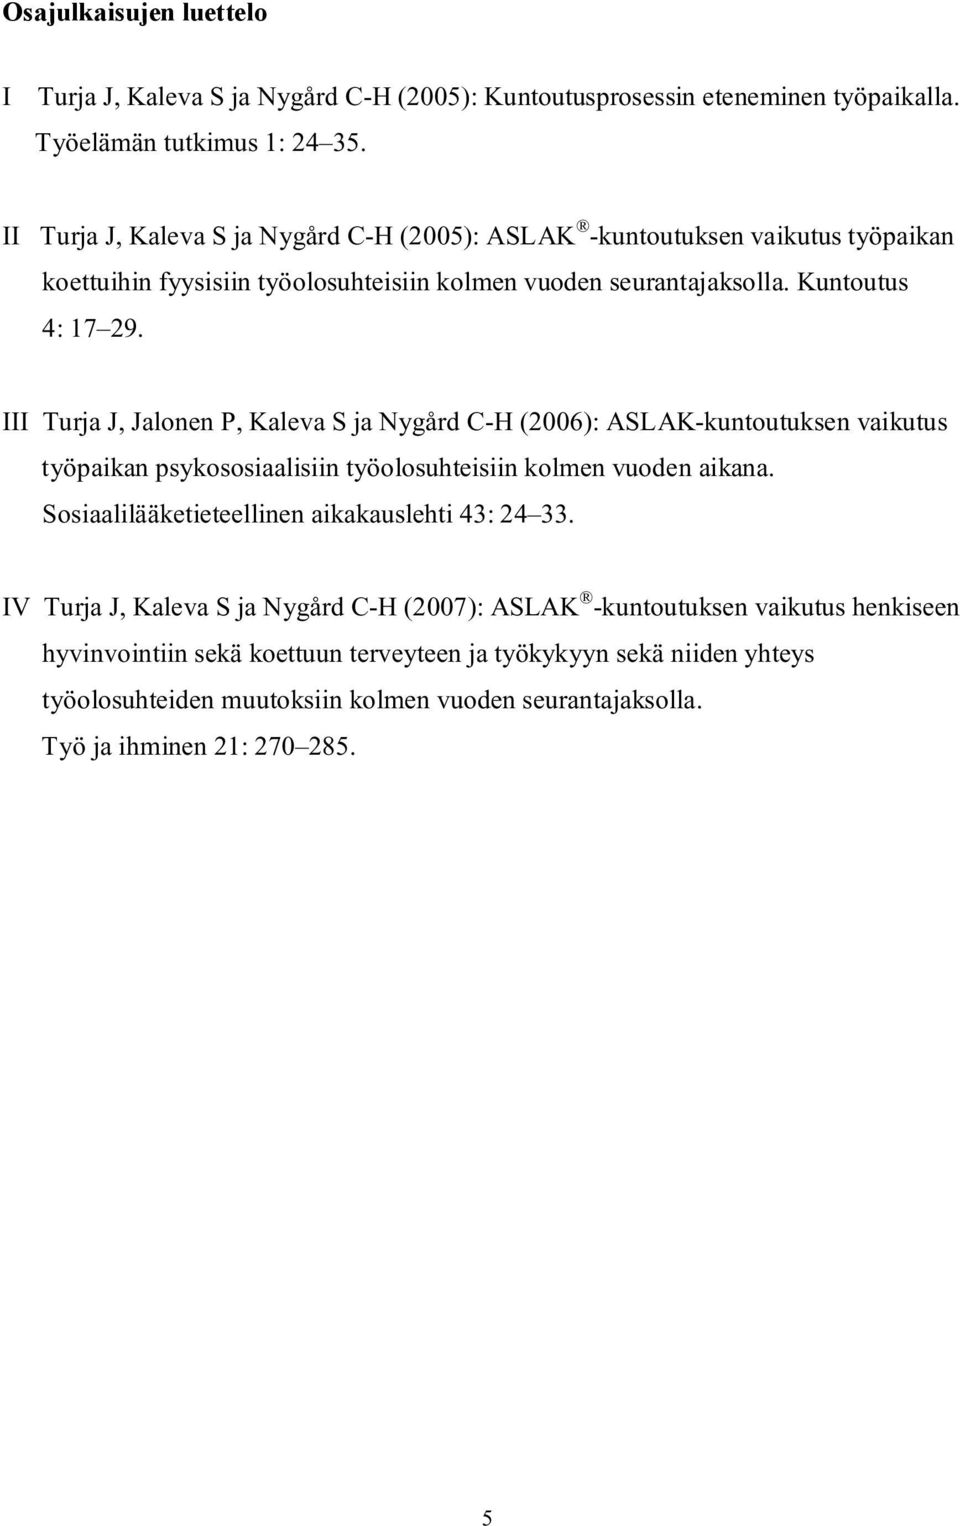 III Turja J, Jalonen P, Kaleva S ja Nygård C-H (2006): ASLAK-kuntoutuksen vaikutus työpaikan psykososiaalisiin työolosuhteisiin kolmen vuoden aikana.